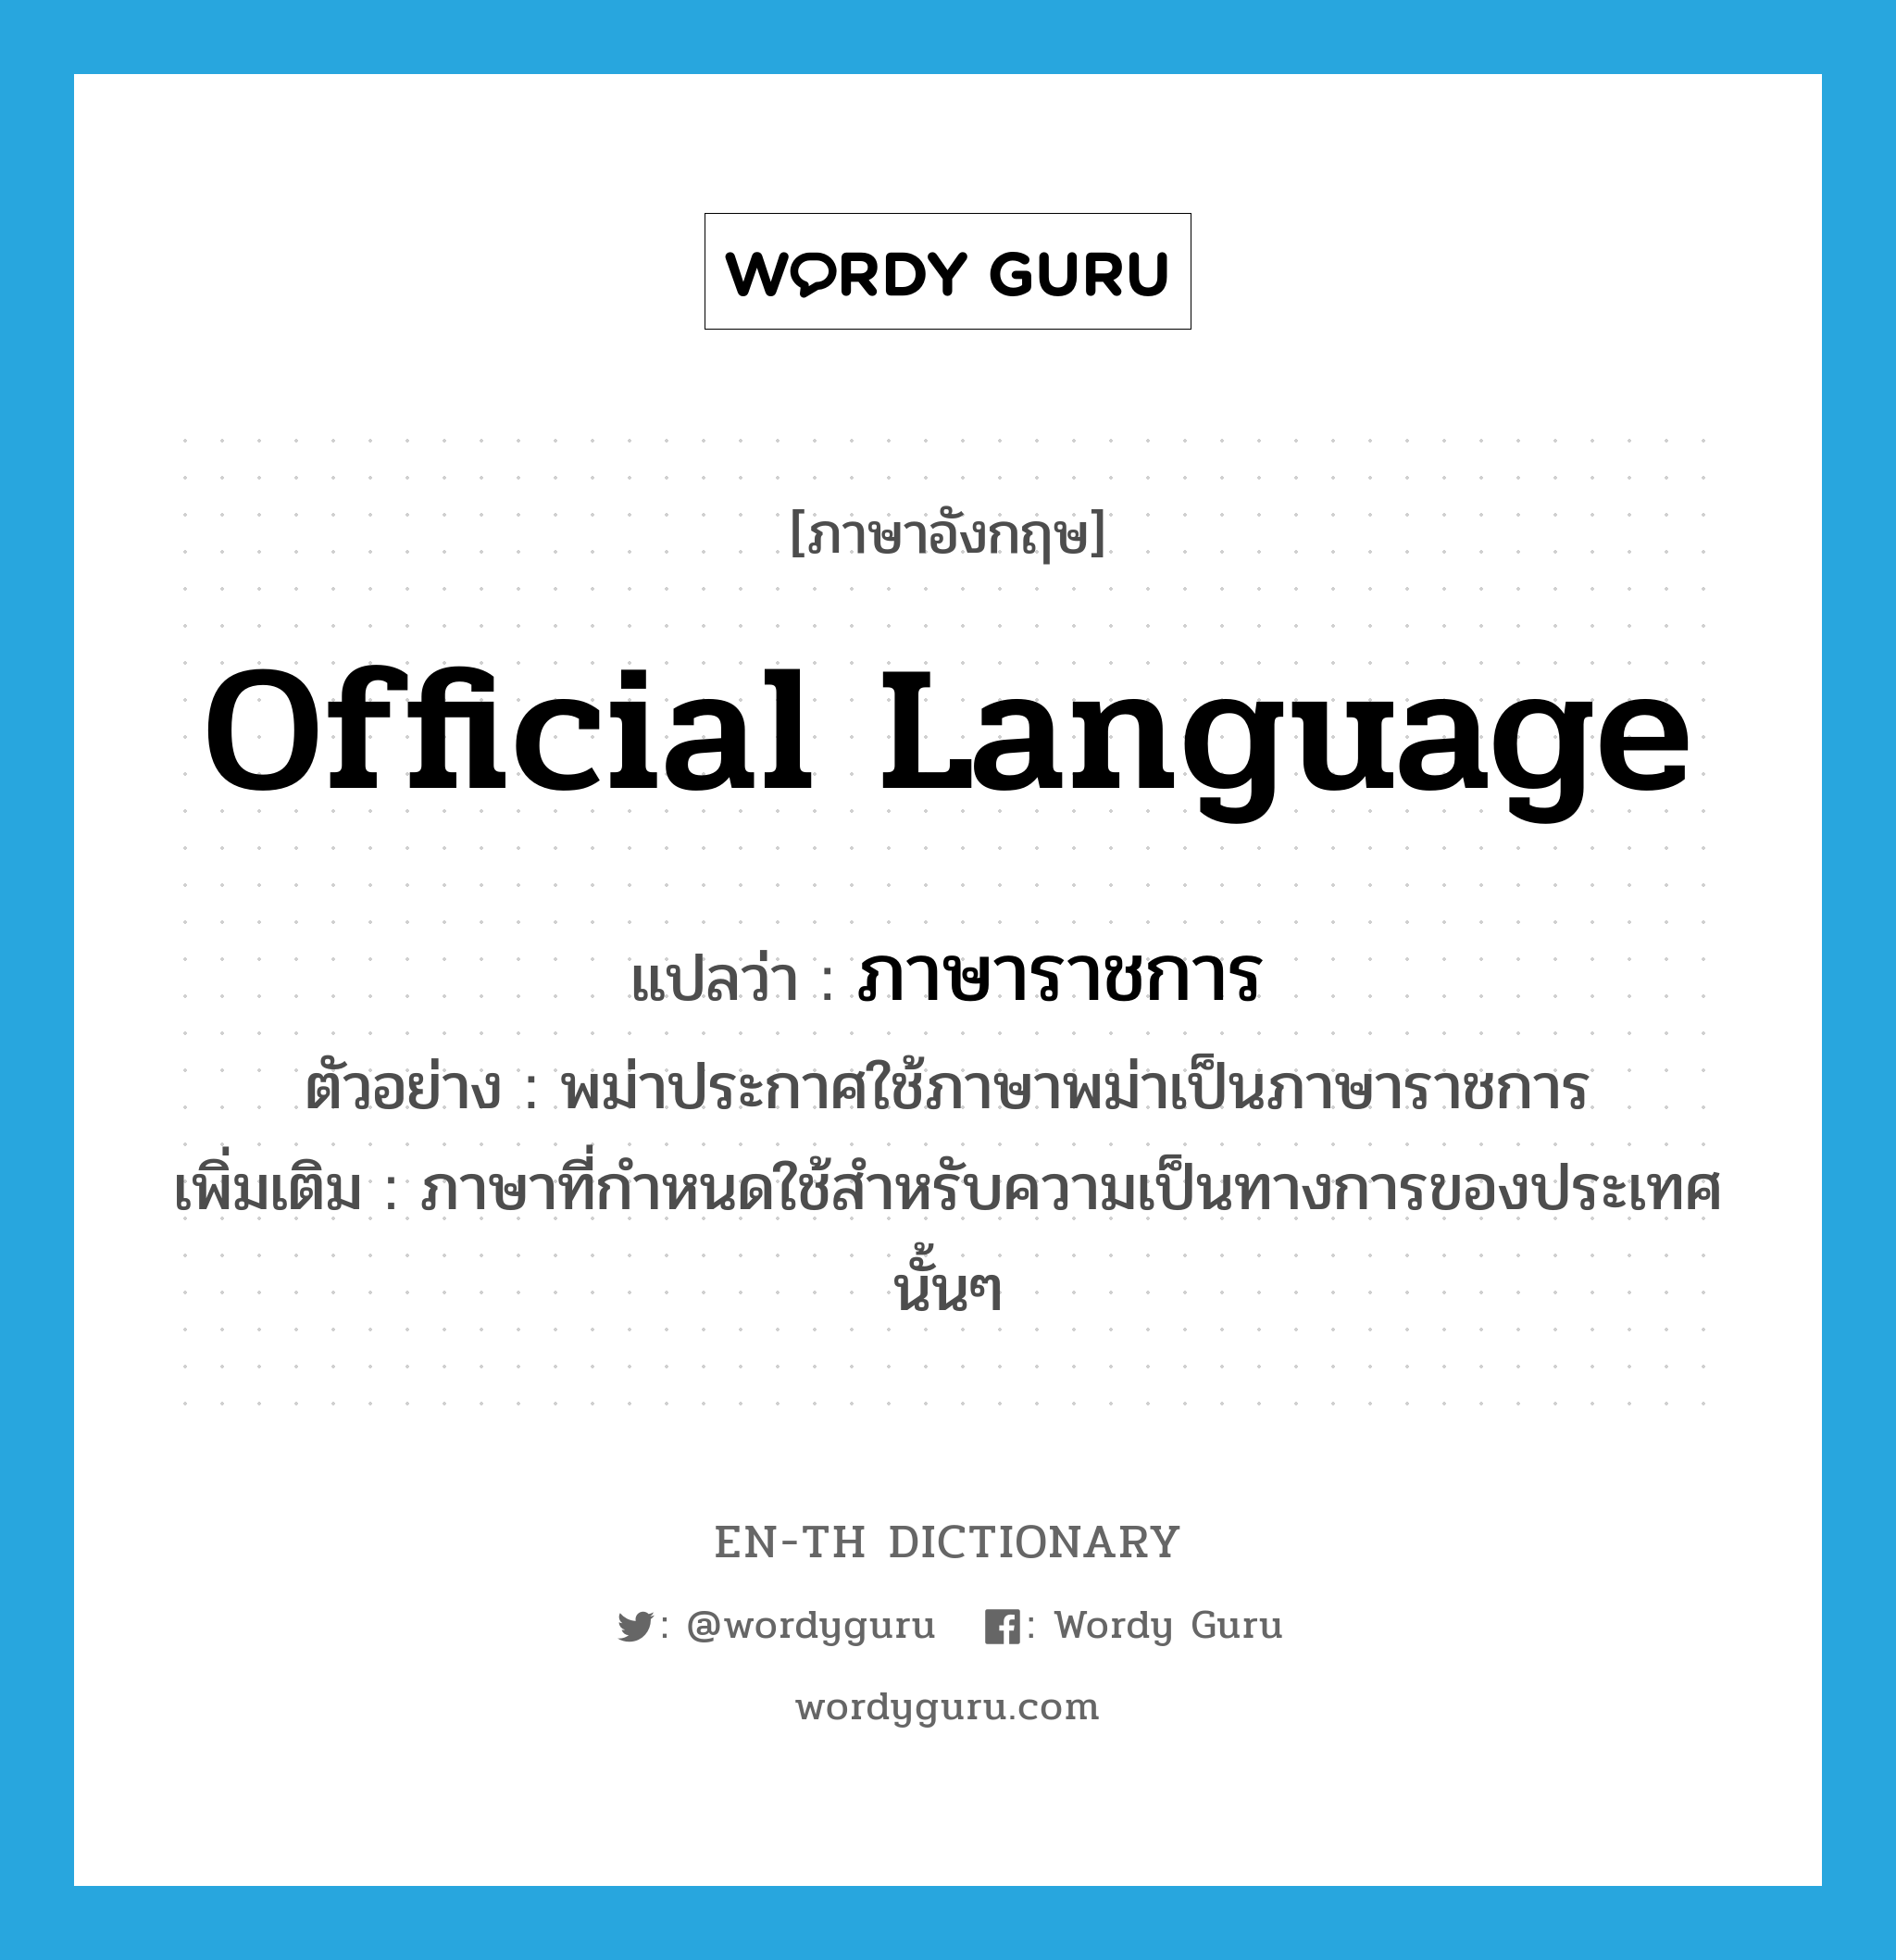 official language แปลว่า?, คำศัพท์ภาษาอังกฤษ official language แปลว่า ภาษาราชการ ประเภท N ตัวอย่าง พม่าประกาศใช้ภาษาพม่าเป็นภาษาราชการ เพิ่มเติม ภาษาที่กำหนดใช้สำหรับความเป็นทางการของประเทศนั้นๆ หมวด N